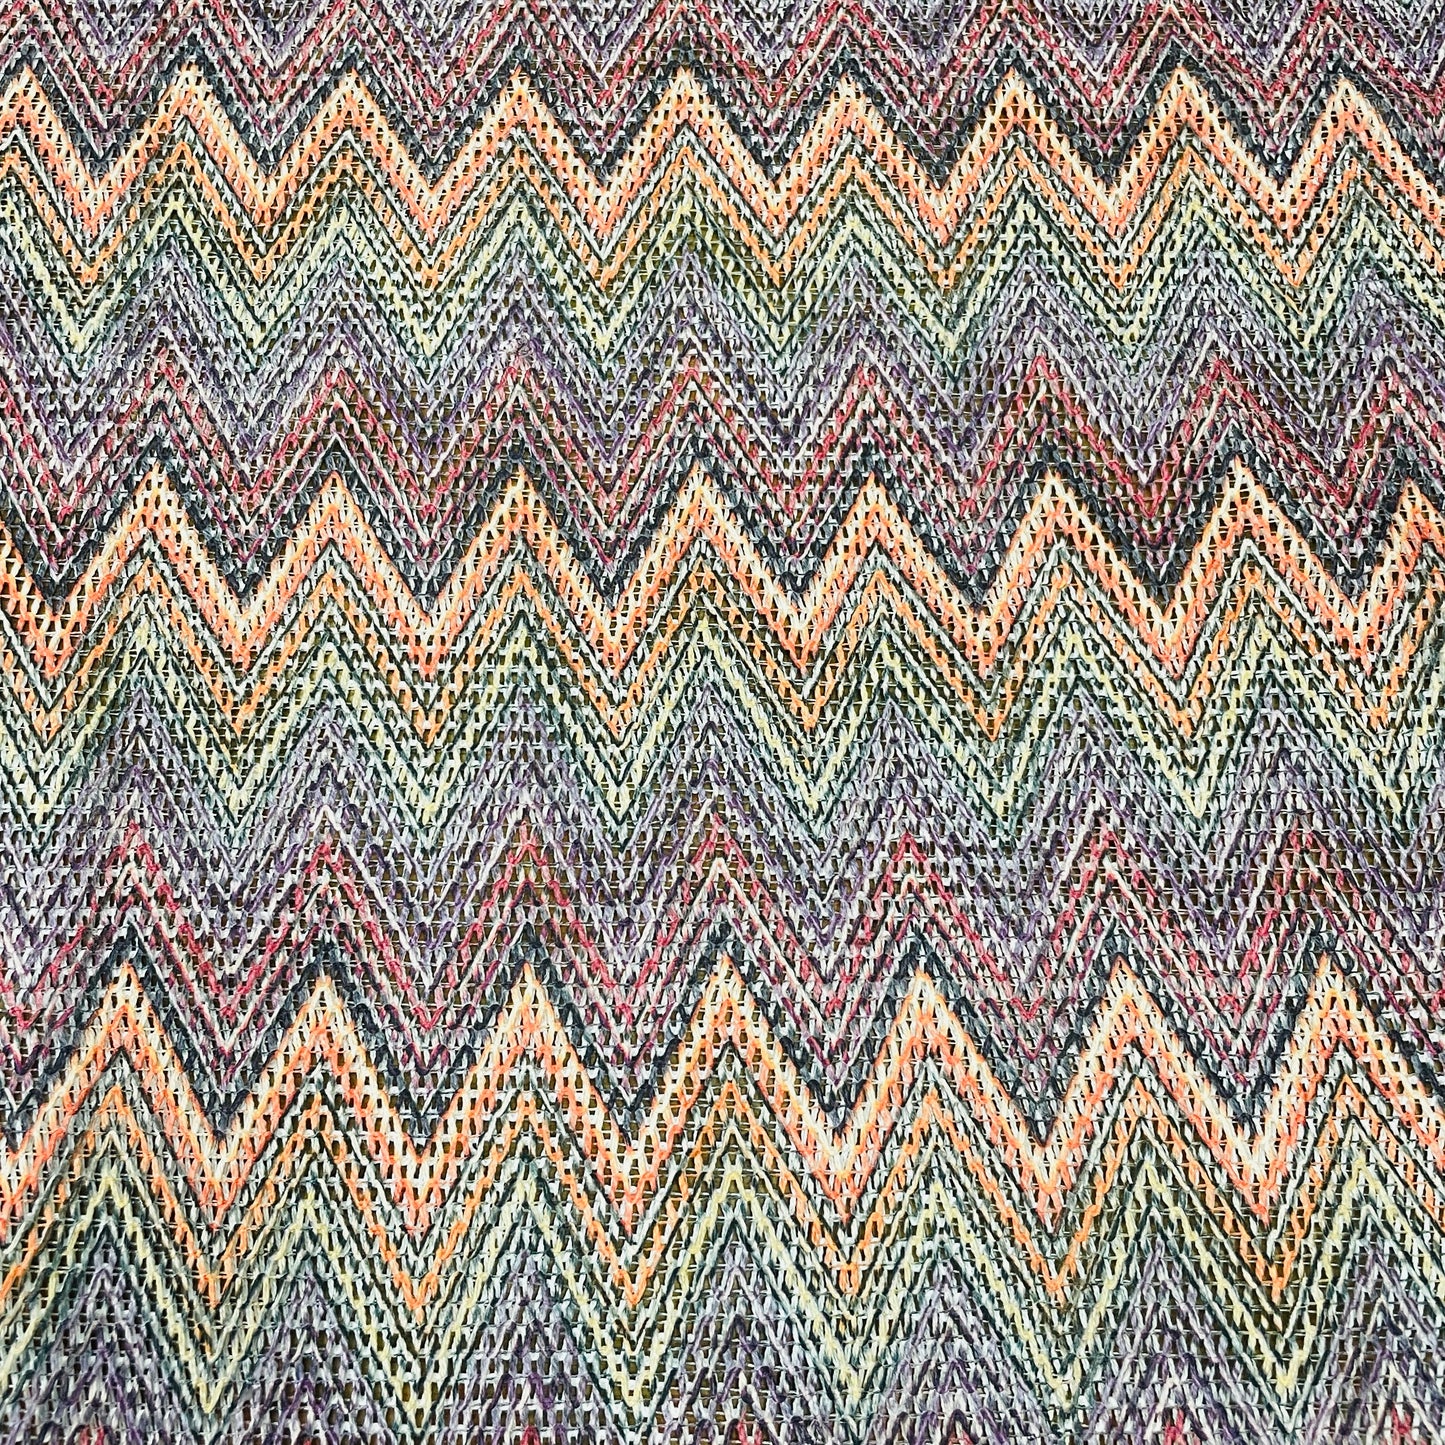 Premium  Multicolor Chevron Print Cotton Crochet Fabric